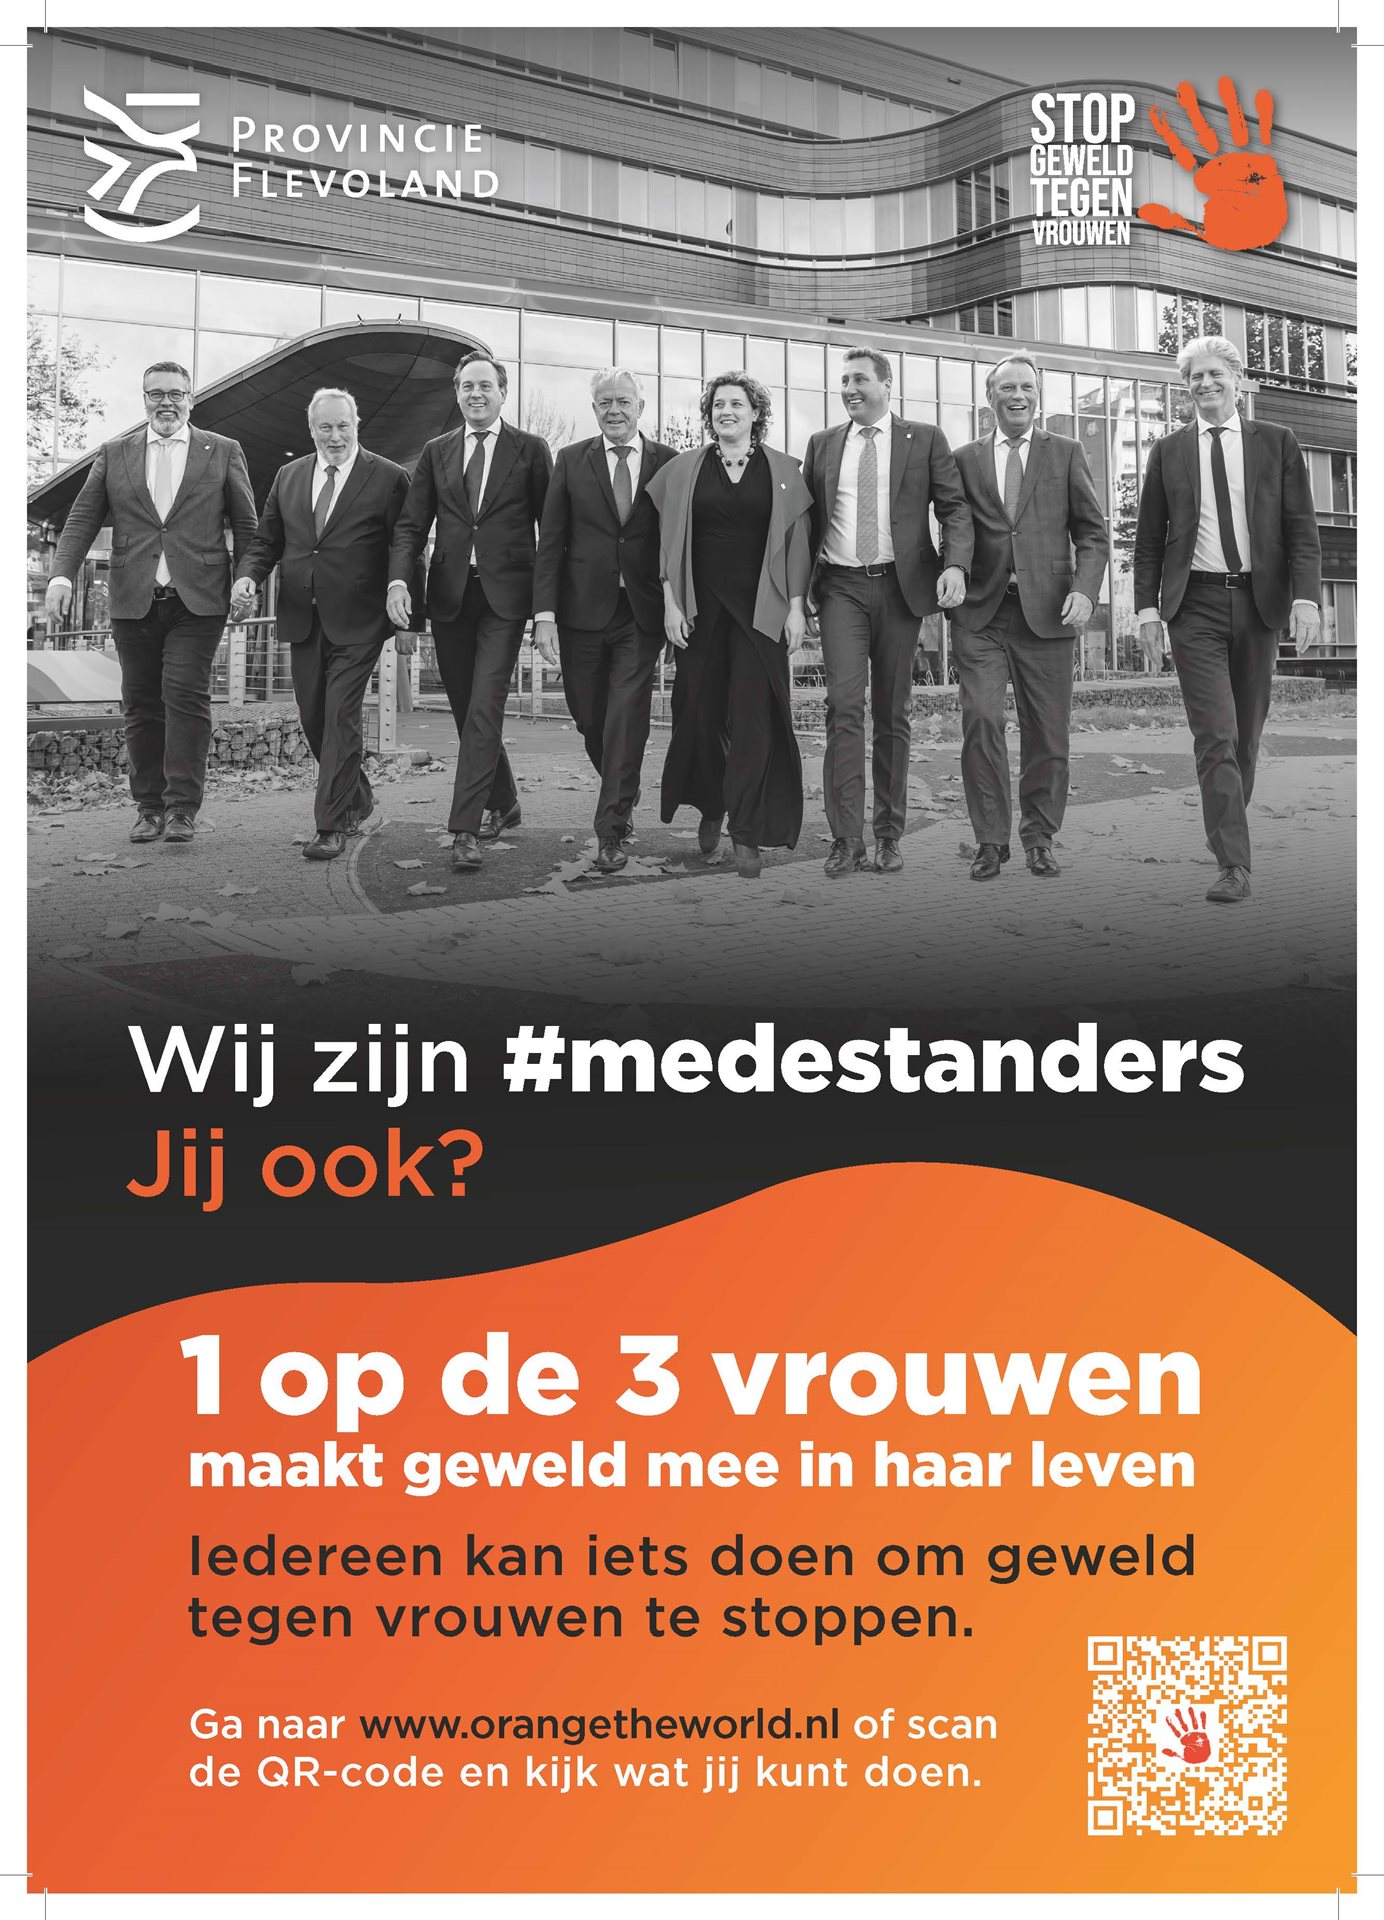 Wij zijn #medestanders. Jij ook? Ga naar orangetheworld.nl en kijk wat jij kunt doen.